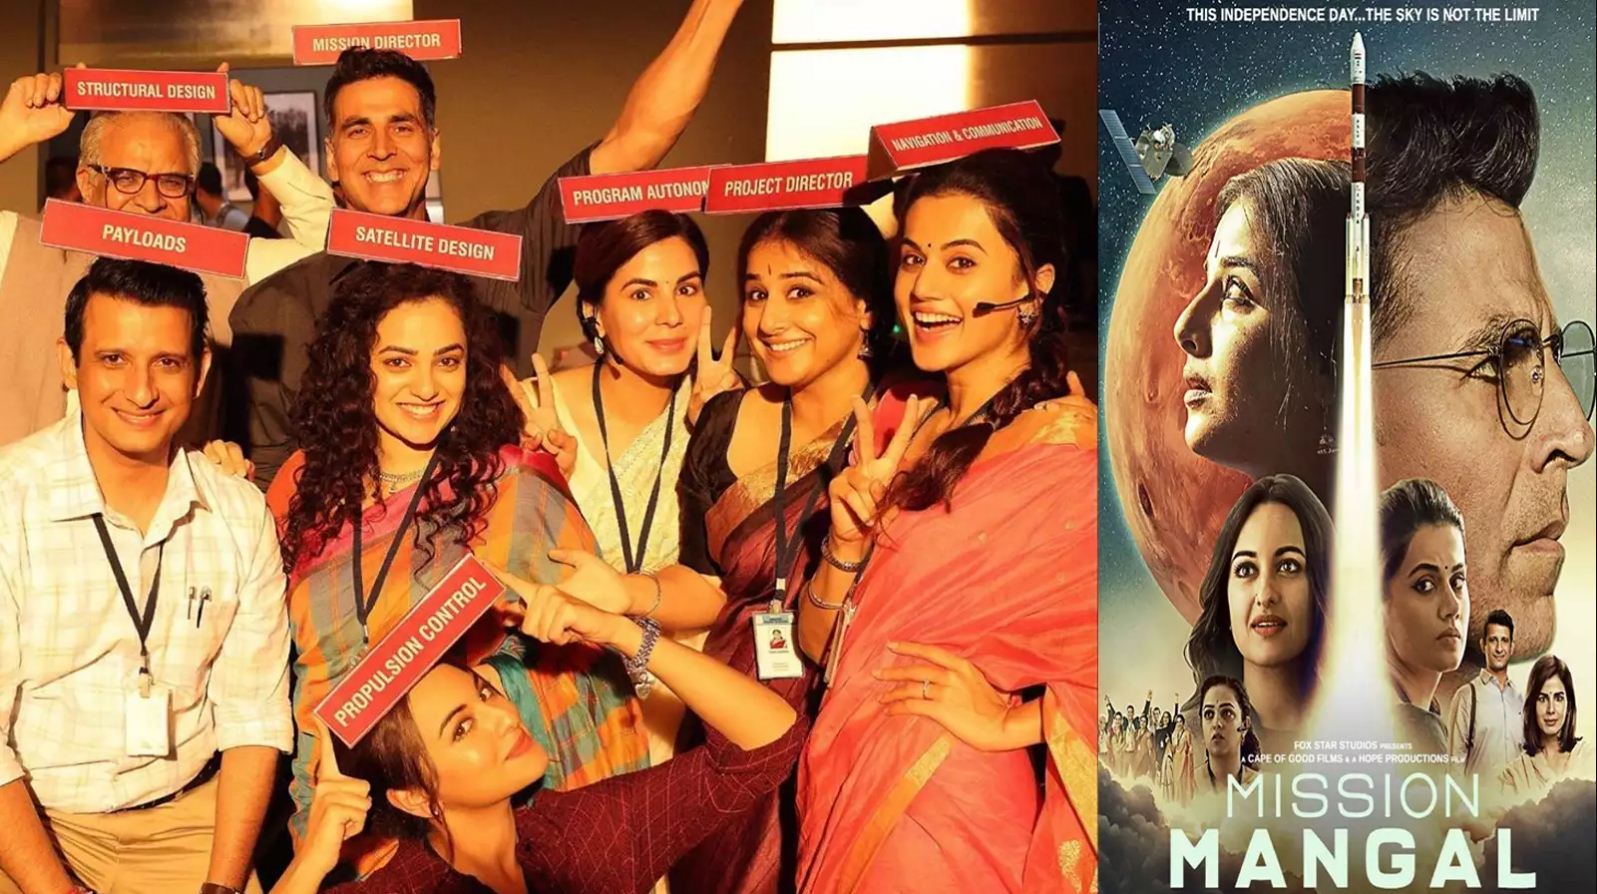 Having big stars in a film is an advantage: "Mission Mangal" director Jagan Shakti